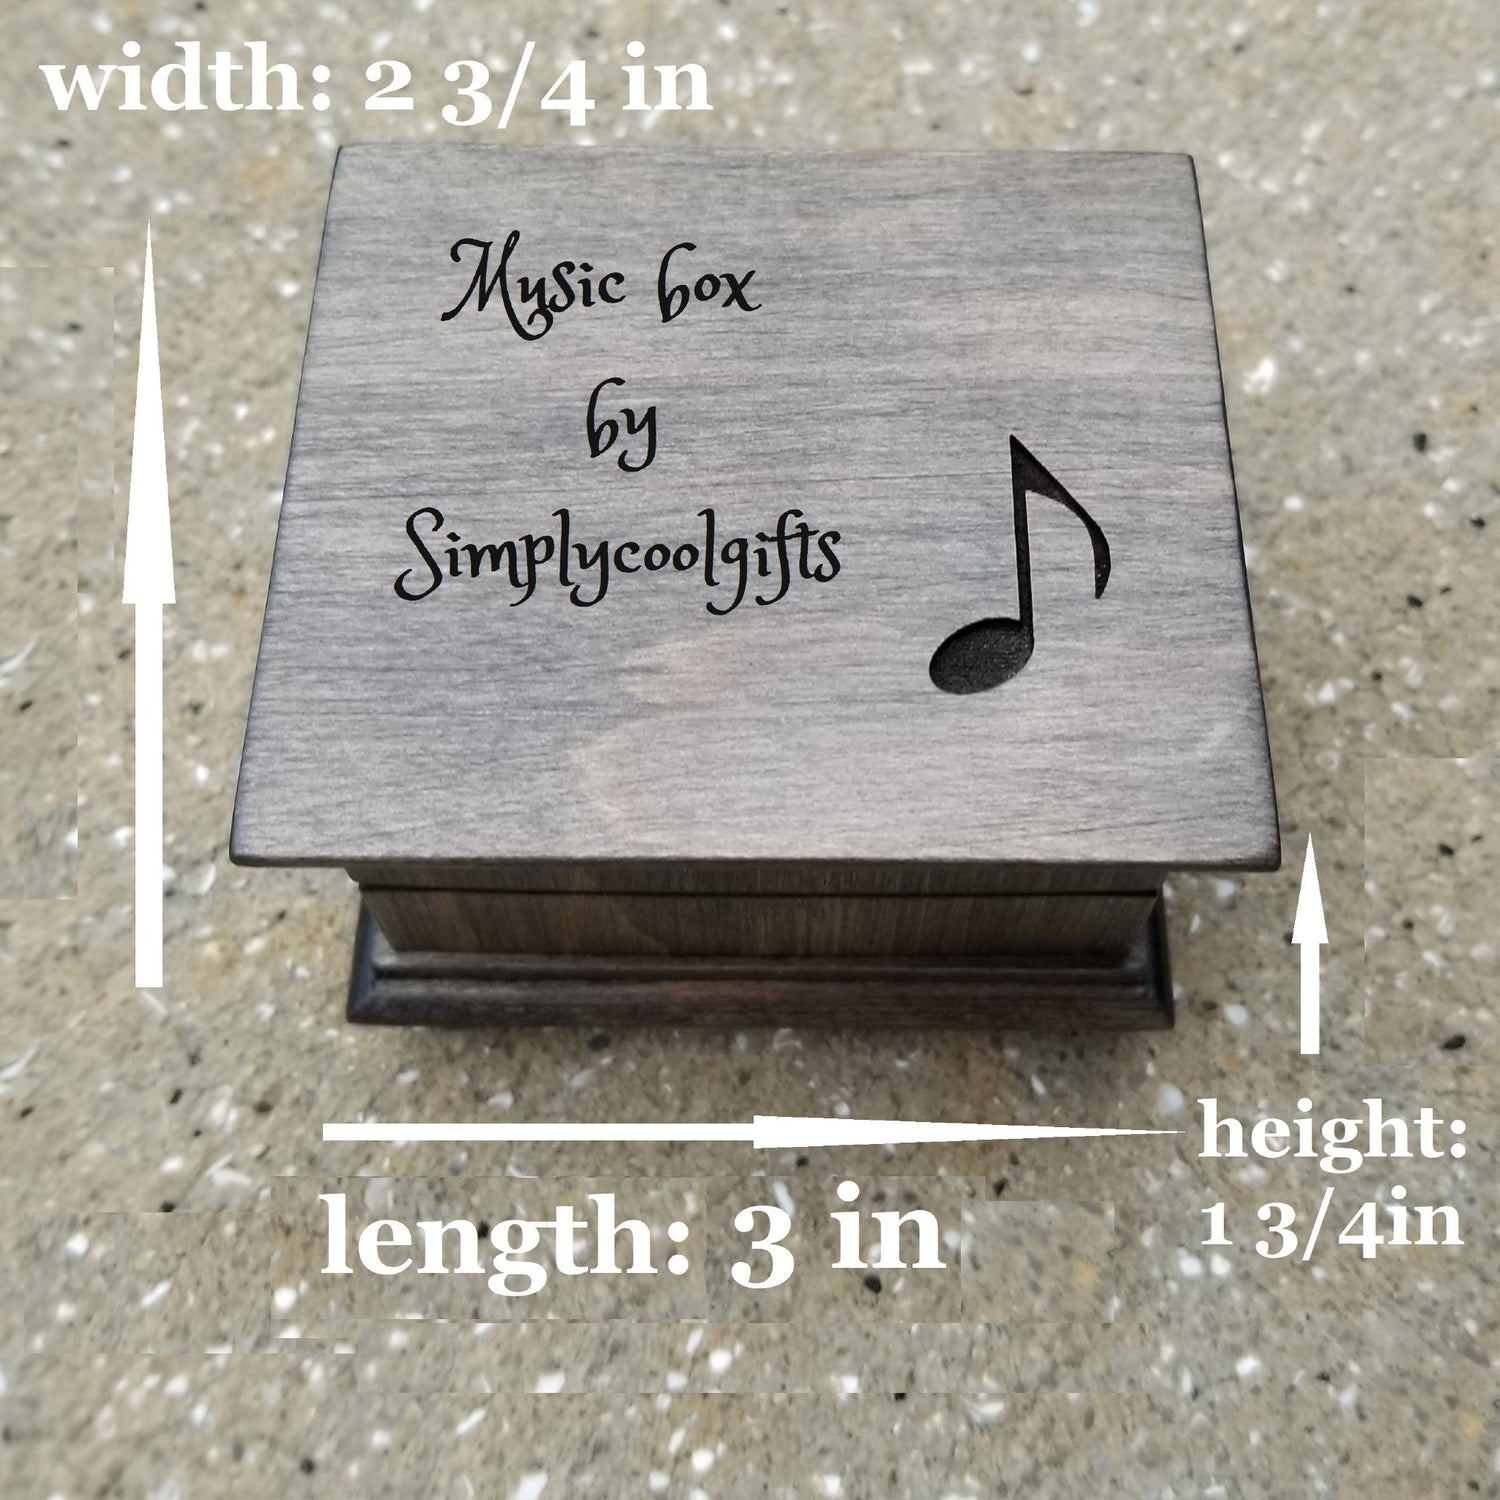 Music box size